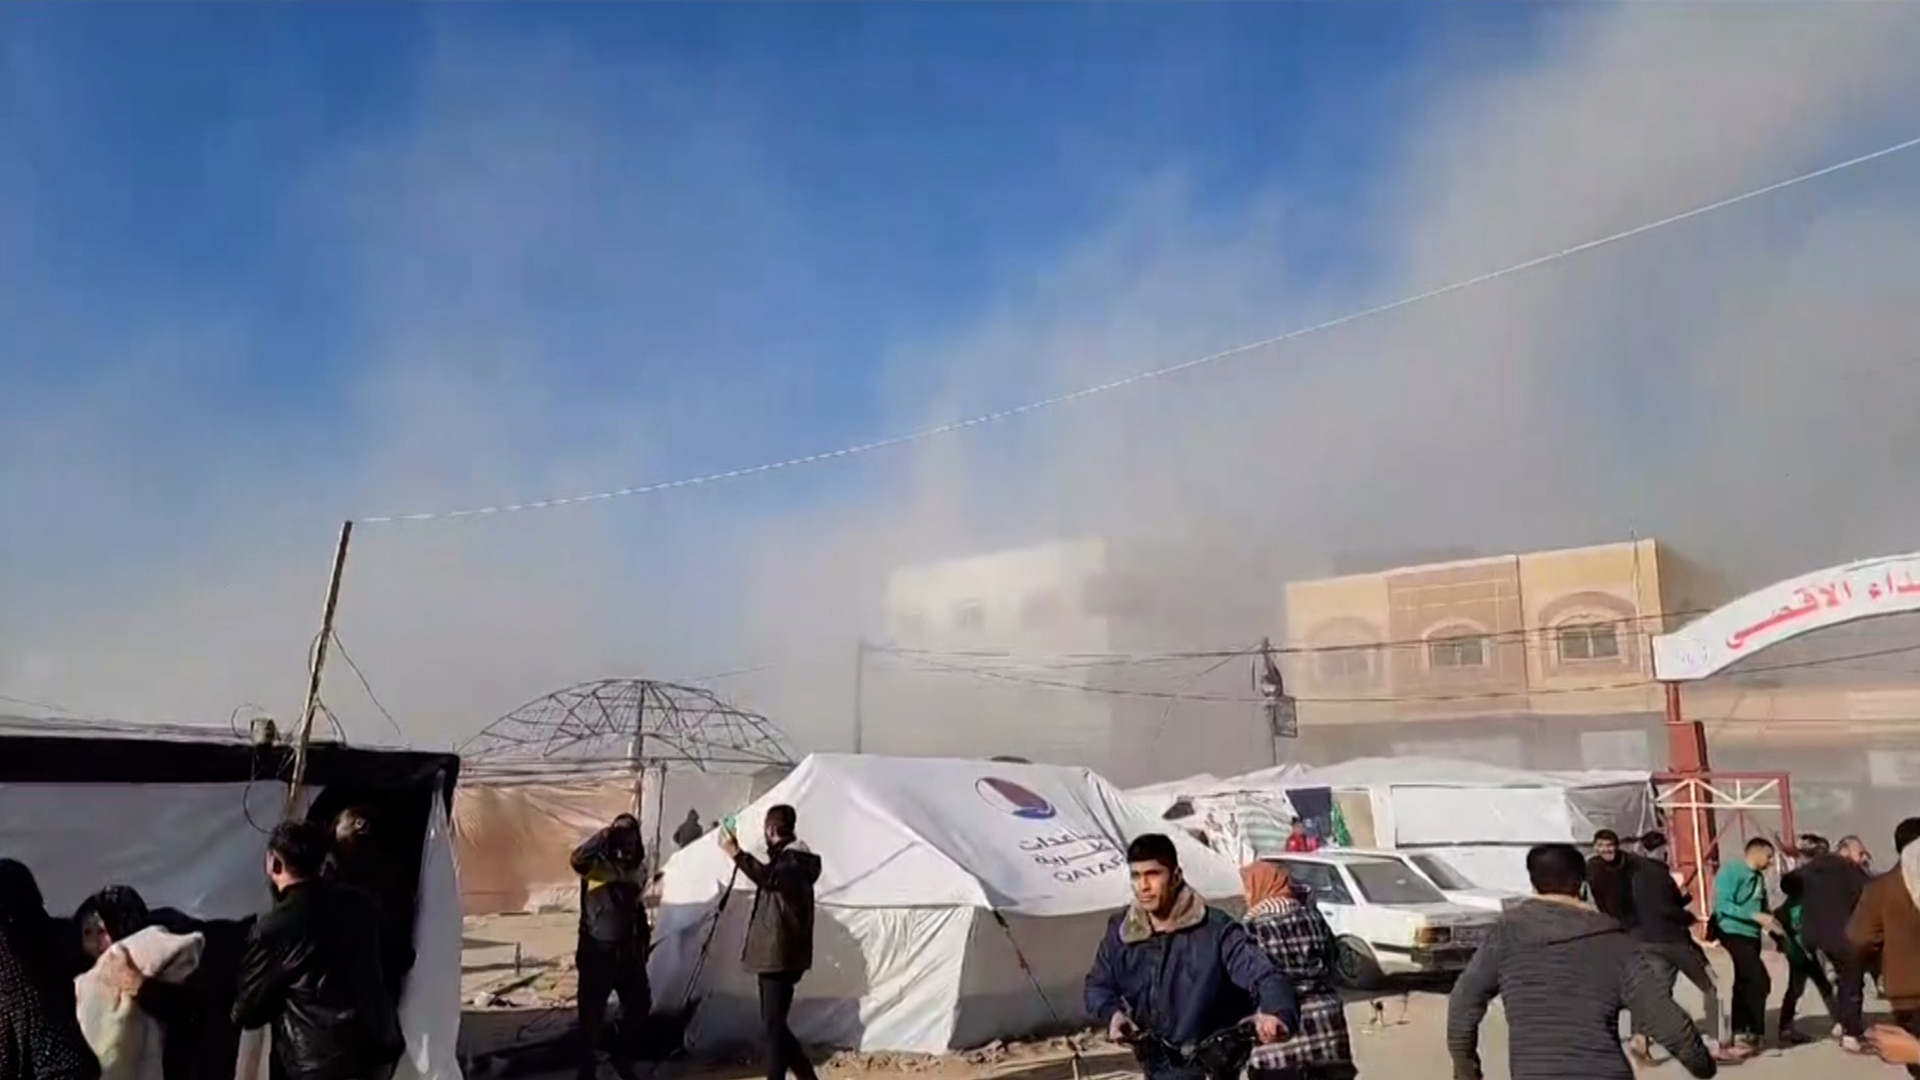 كاميرا البوكس نيوز ترصد لحظة قصف مستشفى شهداء الأقصى في دير البلح | البرامج – البوكس نيوز